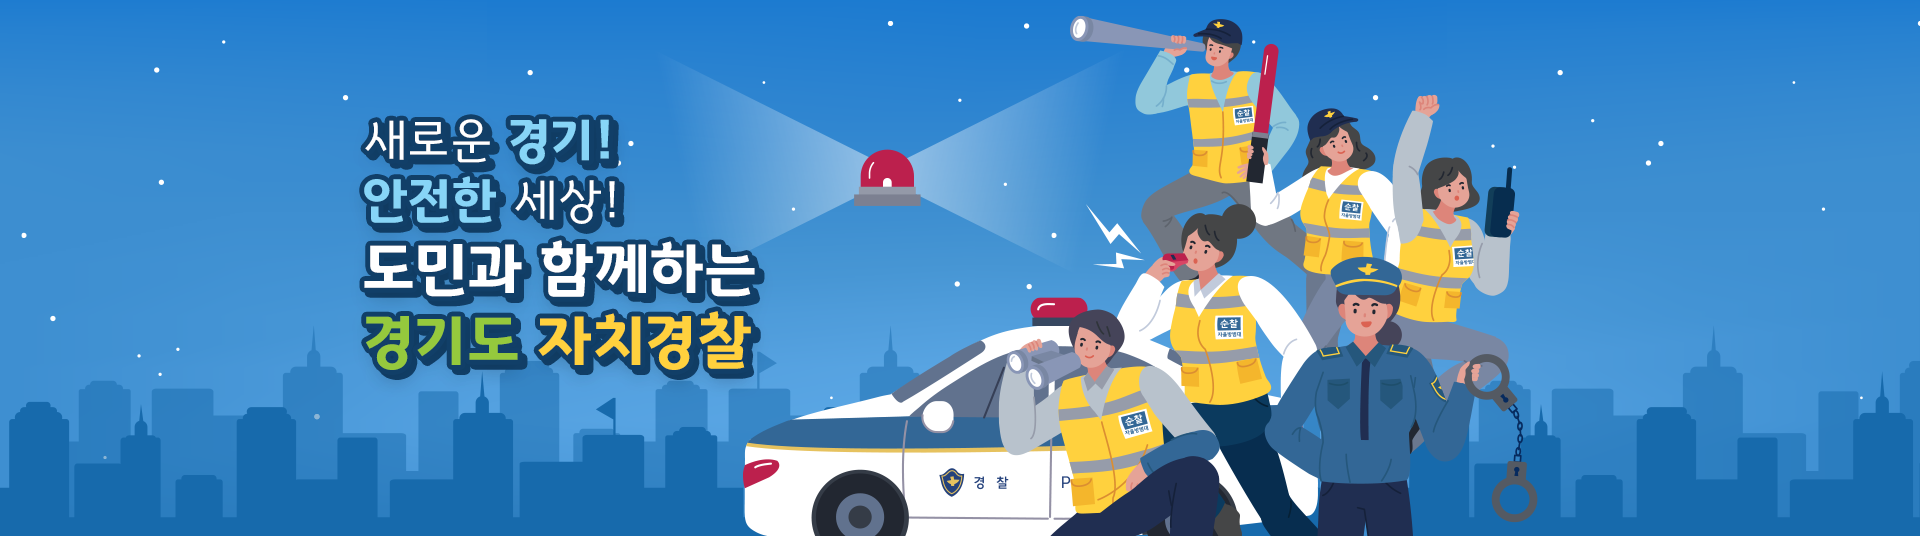 새로운 경기! 안전한 세상! 도민과 함께하는 경기도 자치경찰